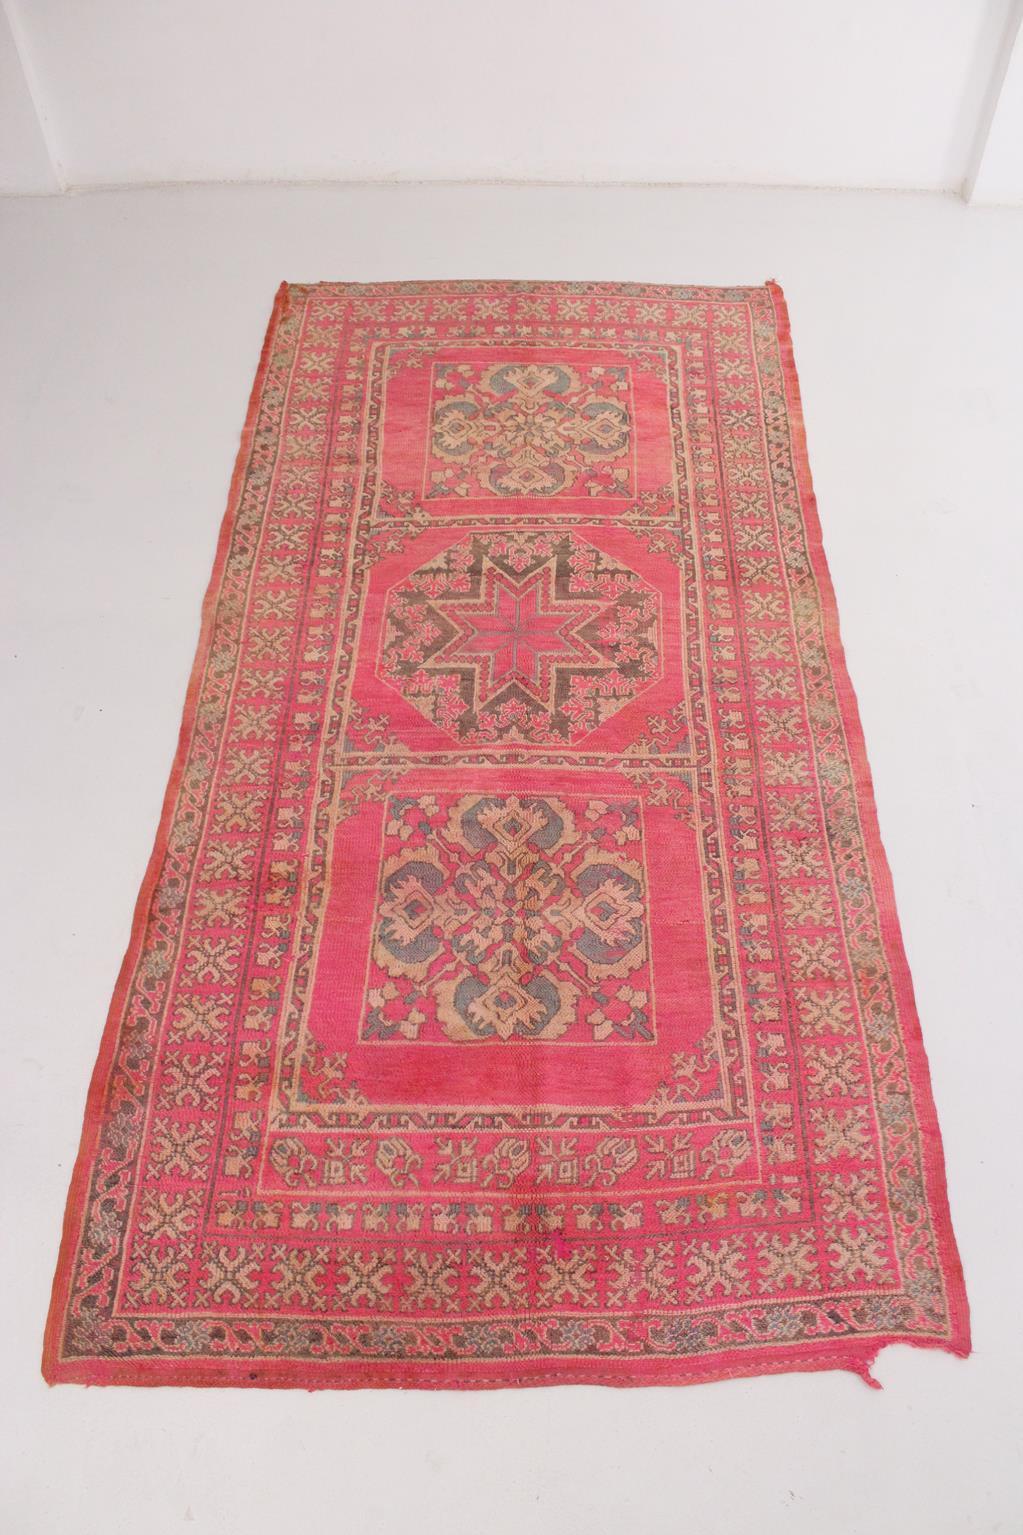 Les tapis vintage de la tribu Ait Yacoub, Haut Atlas, Maroc, sont connus et reconnaissables pour leurs rosettes orientales et leurs motifs floraux dans une composition de cadres multipliés. On peut y sentir l'inspiration des plus anciens et célèbres